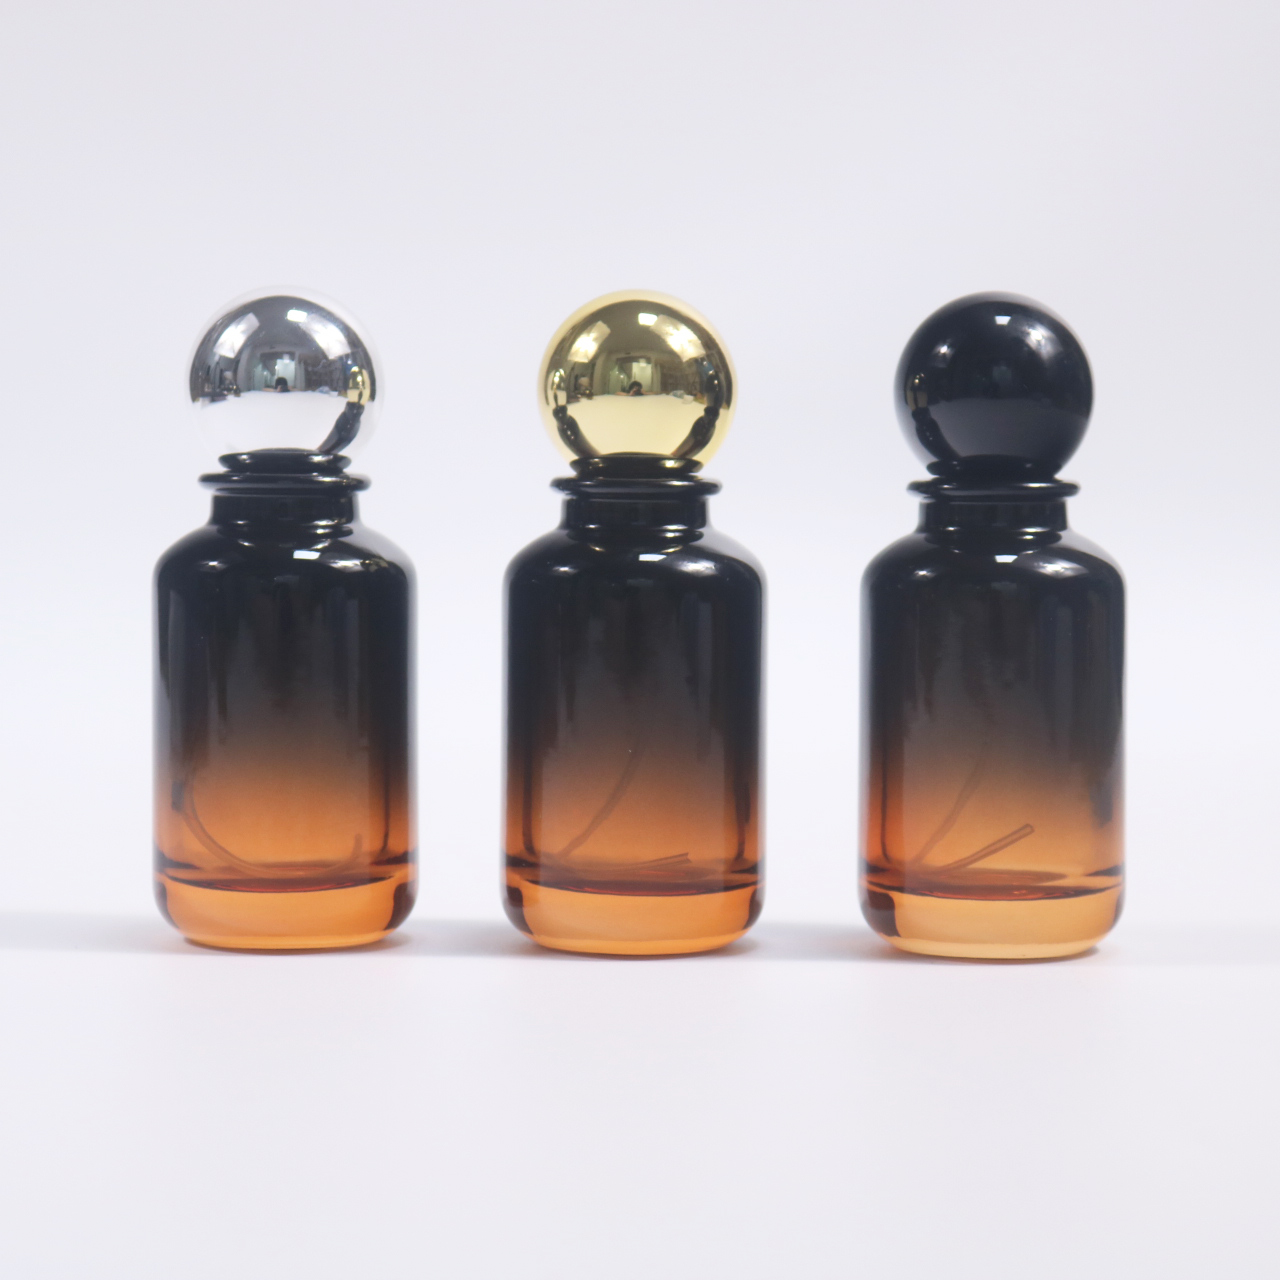 Люкс парфюмердик бөтөлкөлөр: Elegance жана сонун жыпар жыттуу заттардын түбөлүк аралашуусу